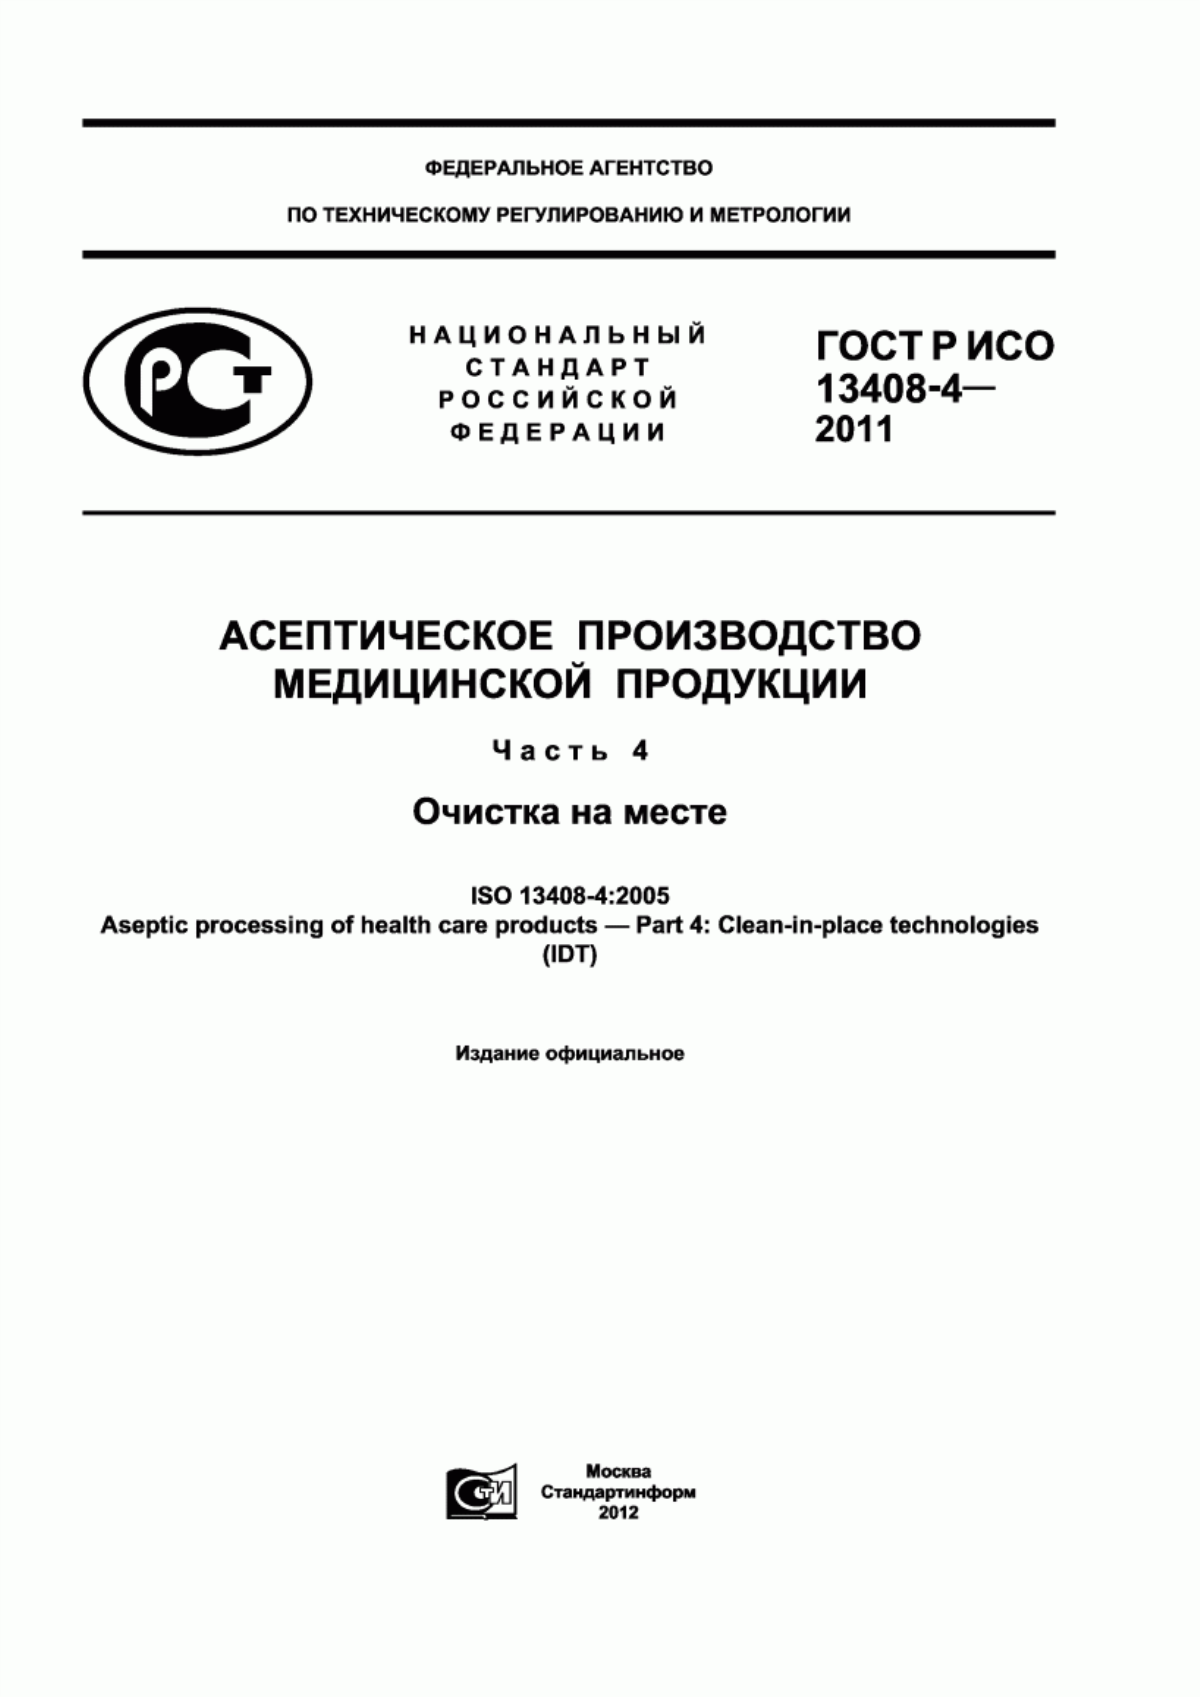 ГОСТ Р ИСО 13408-4-2011 Асептическое производство медицинской продукции. Часть 4. Очистка на месте